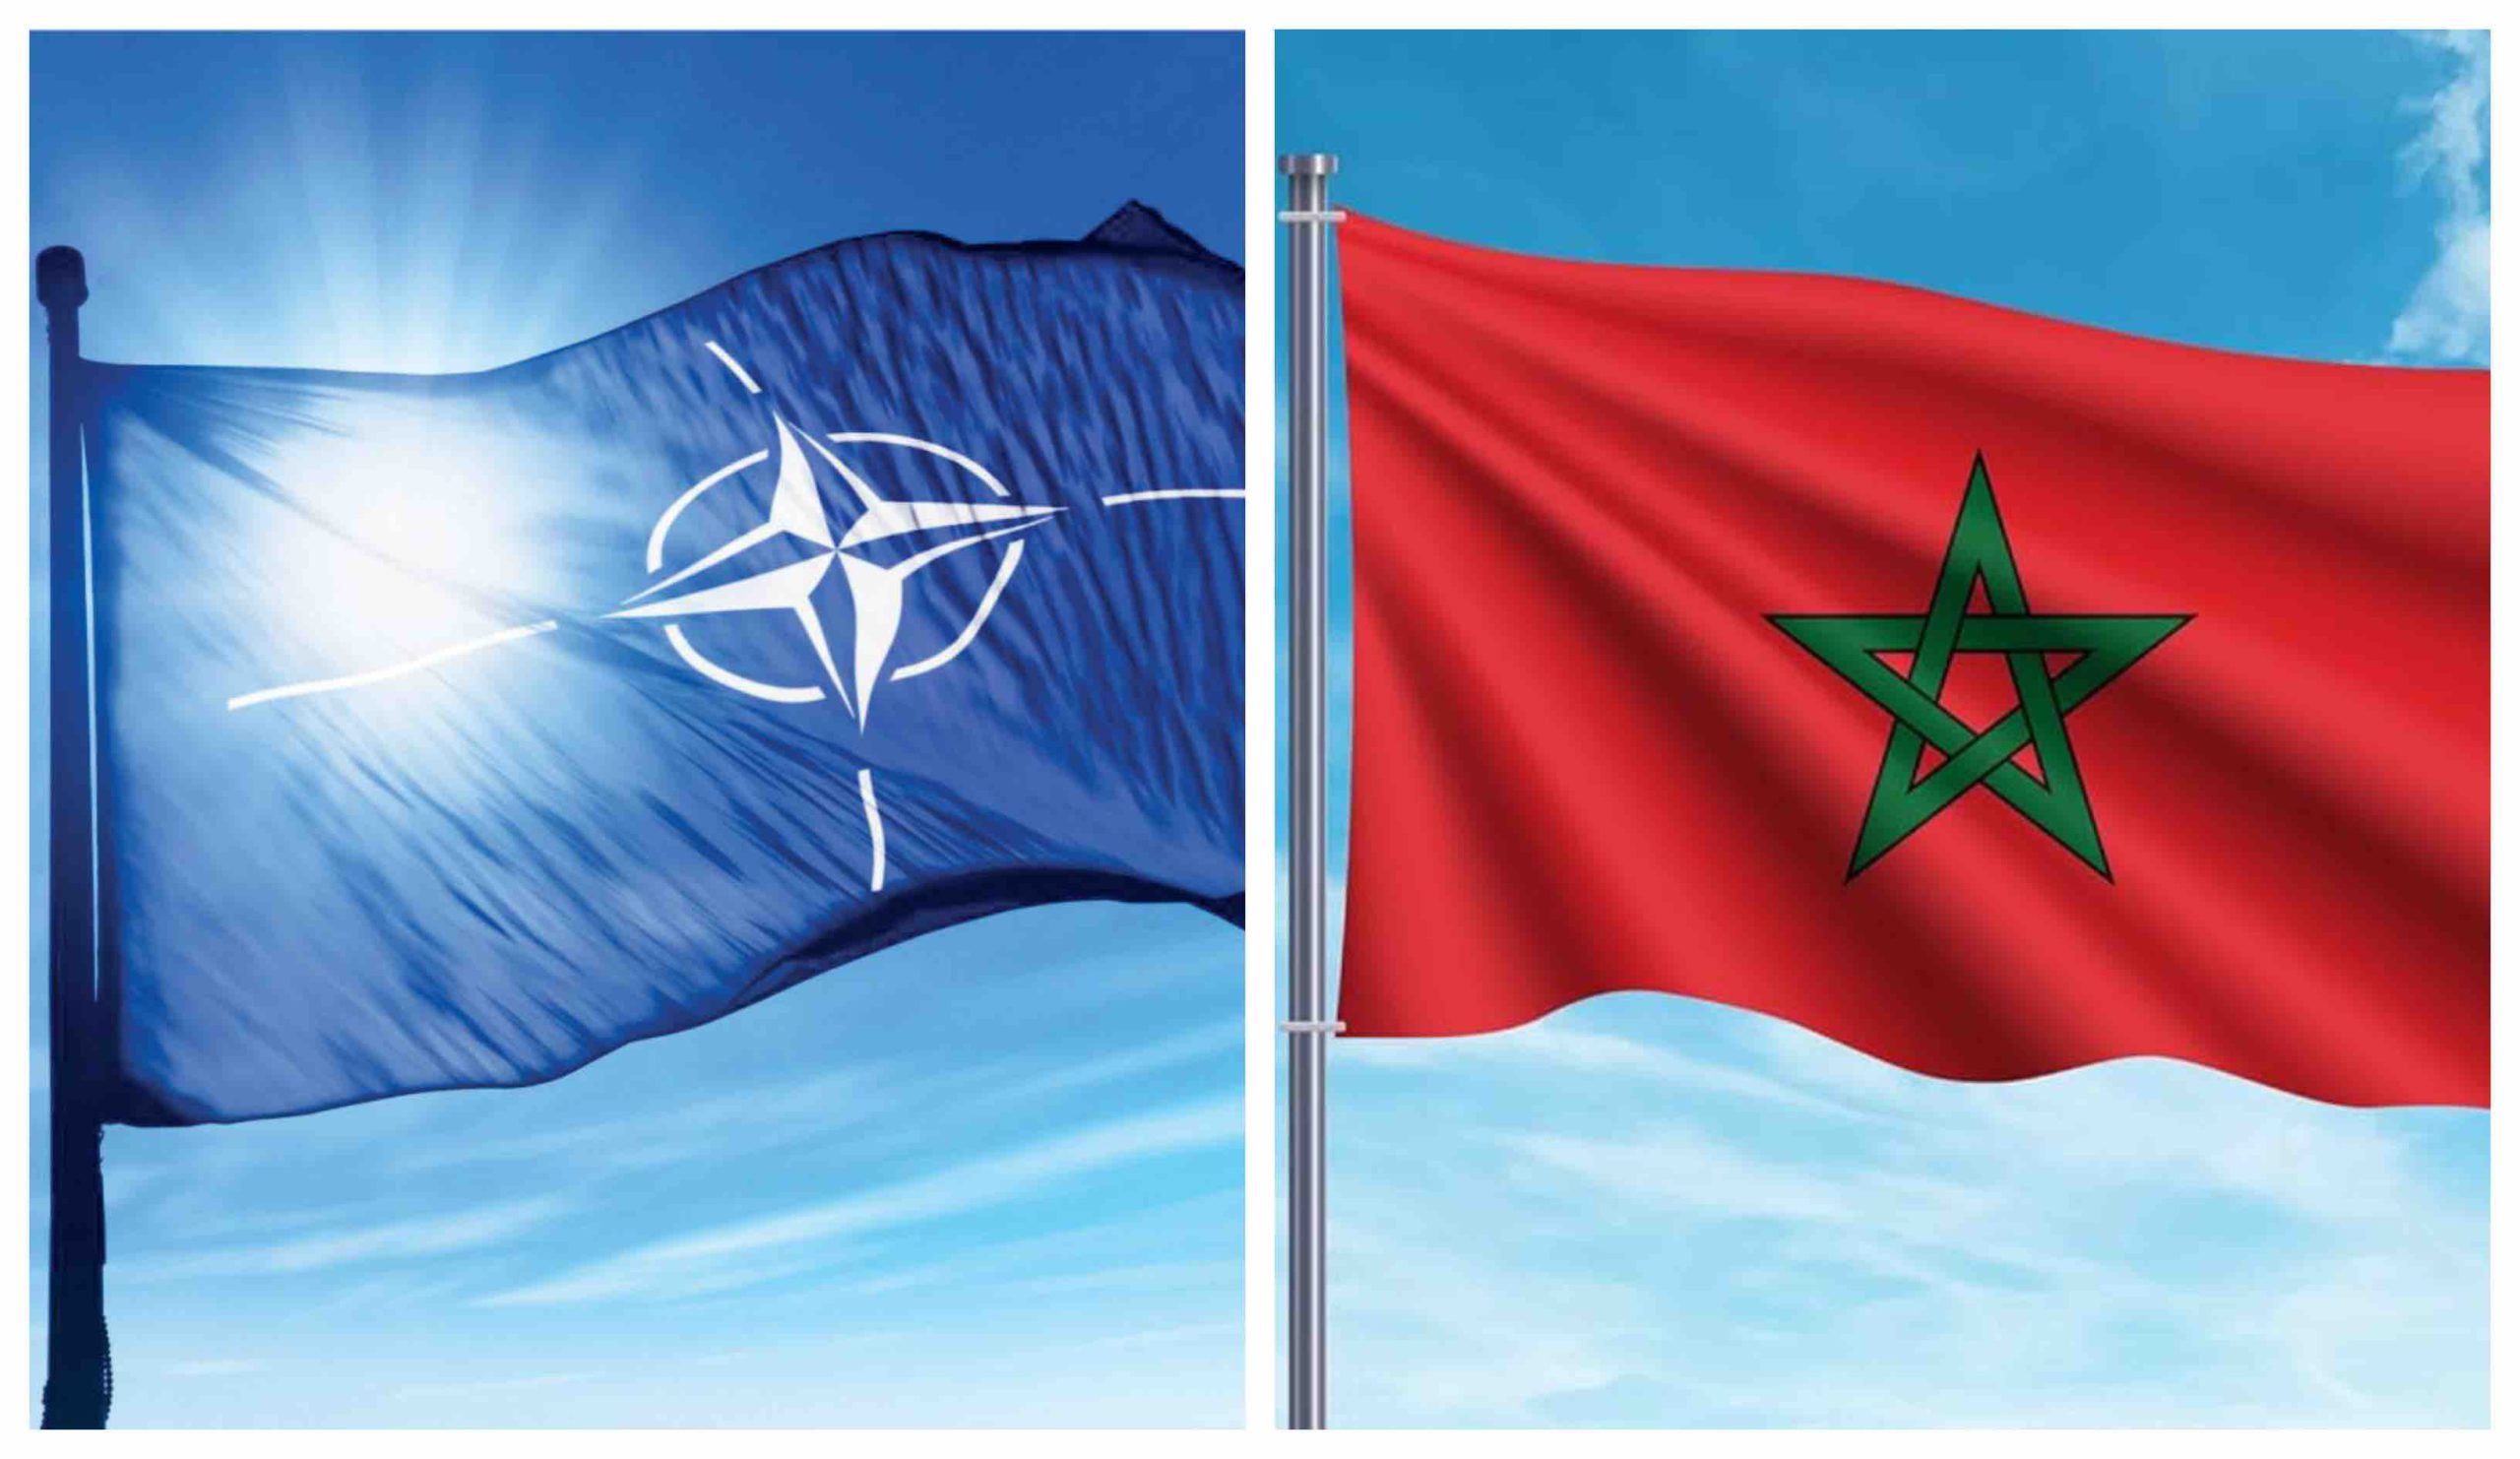 OTAN Maroc NATO Morocco